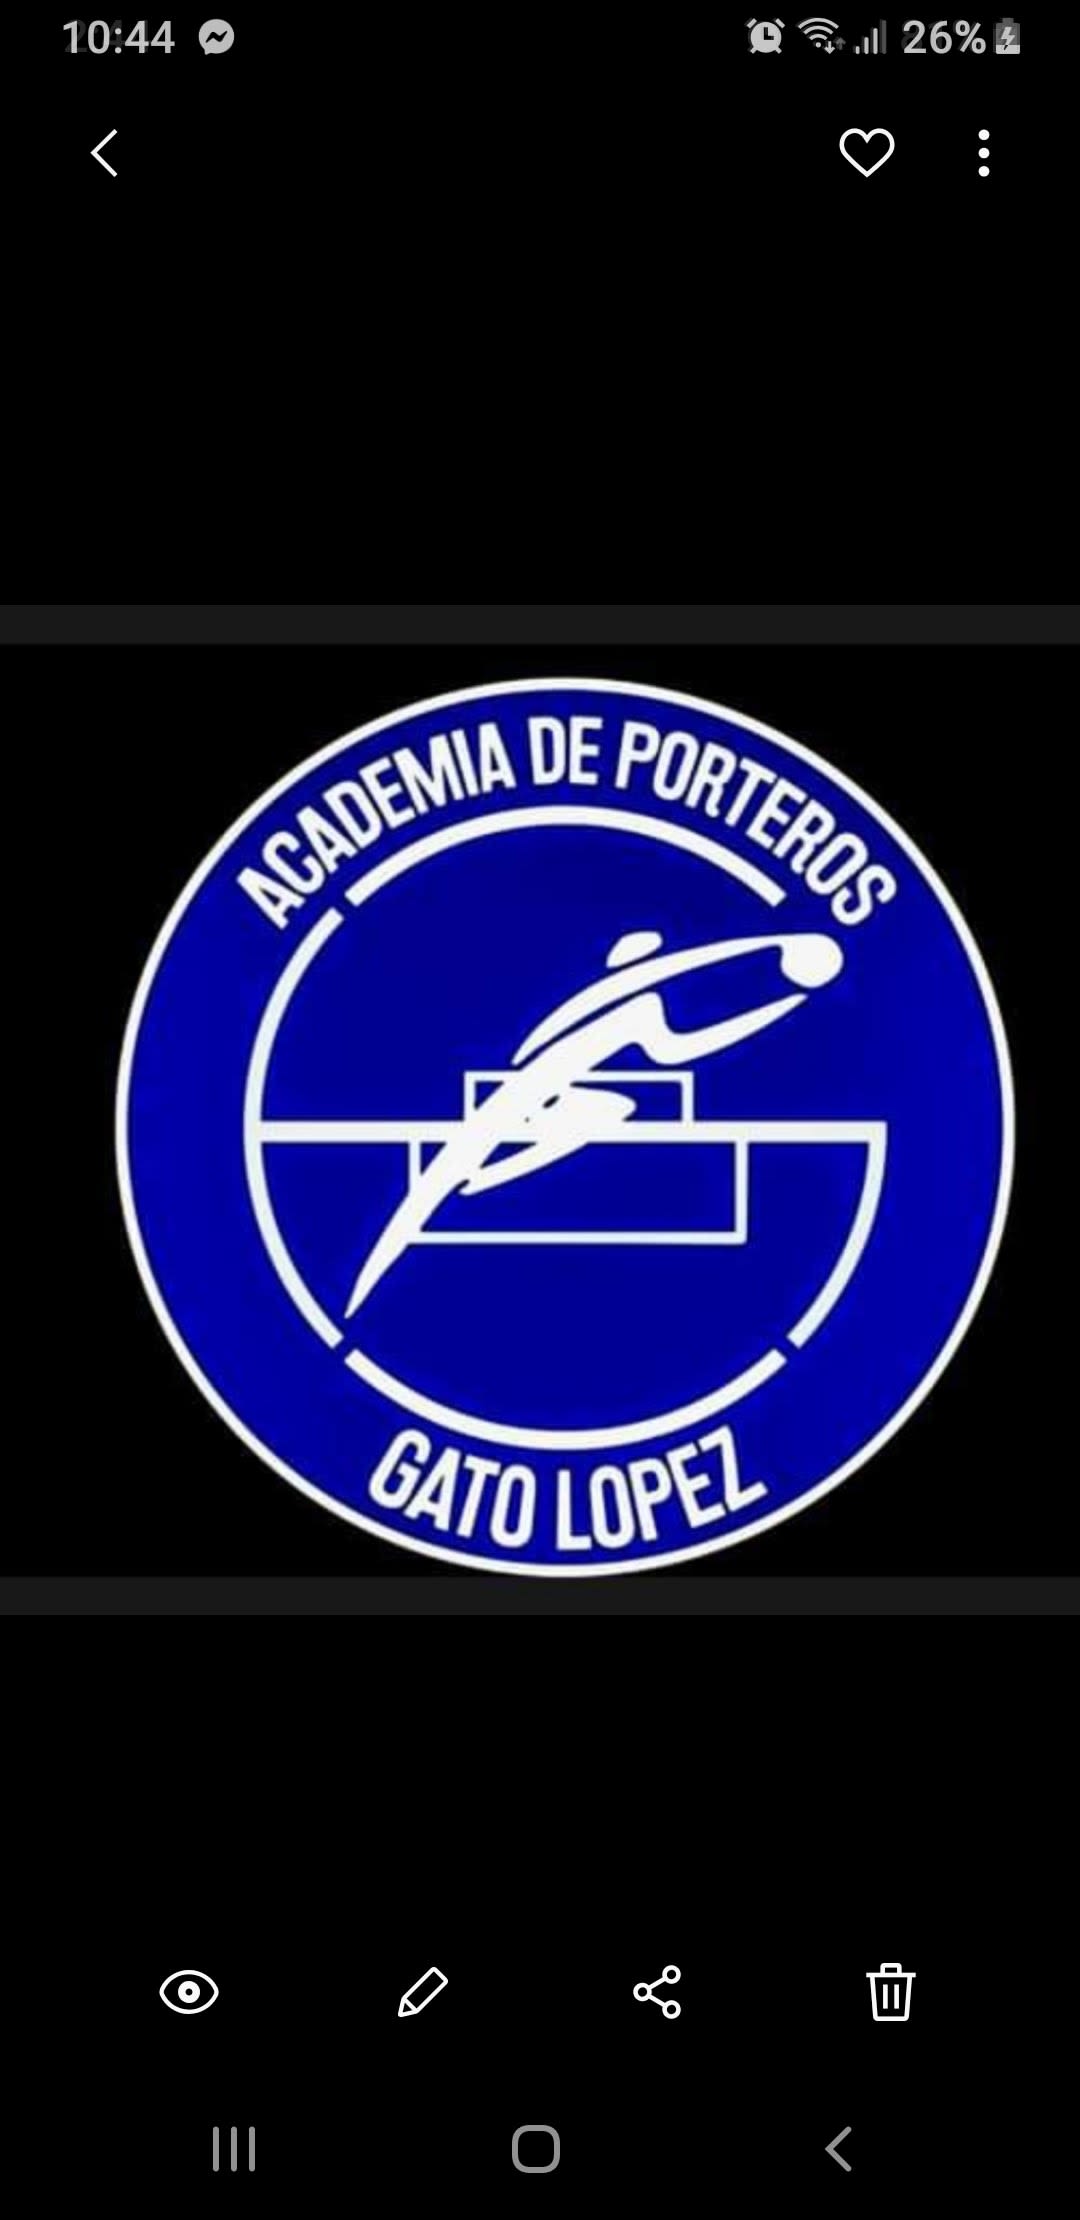 Academia De Porteros Gato Lopez